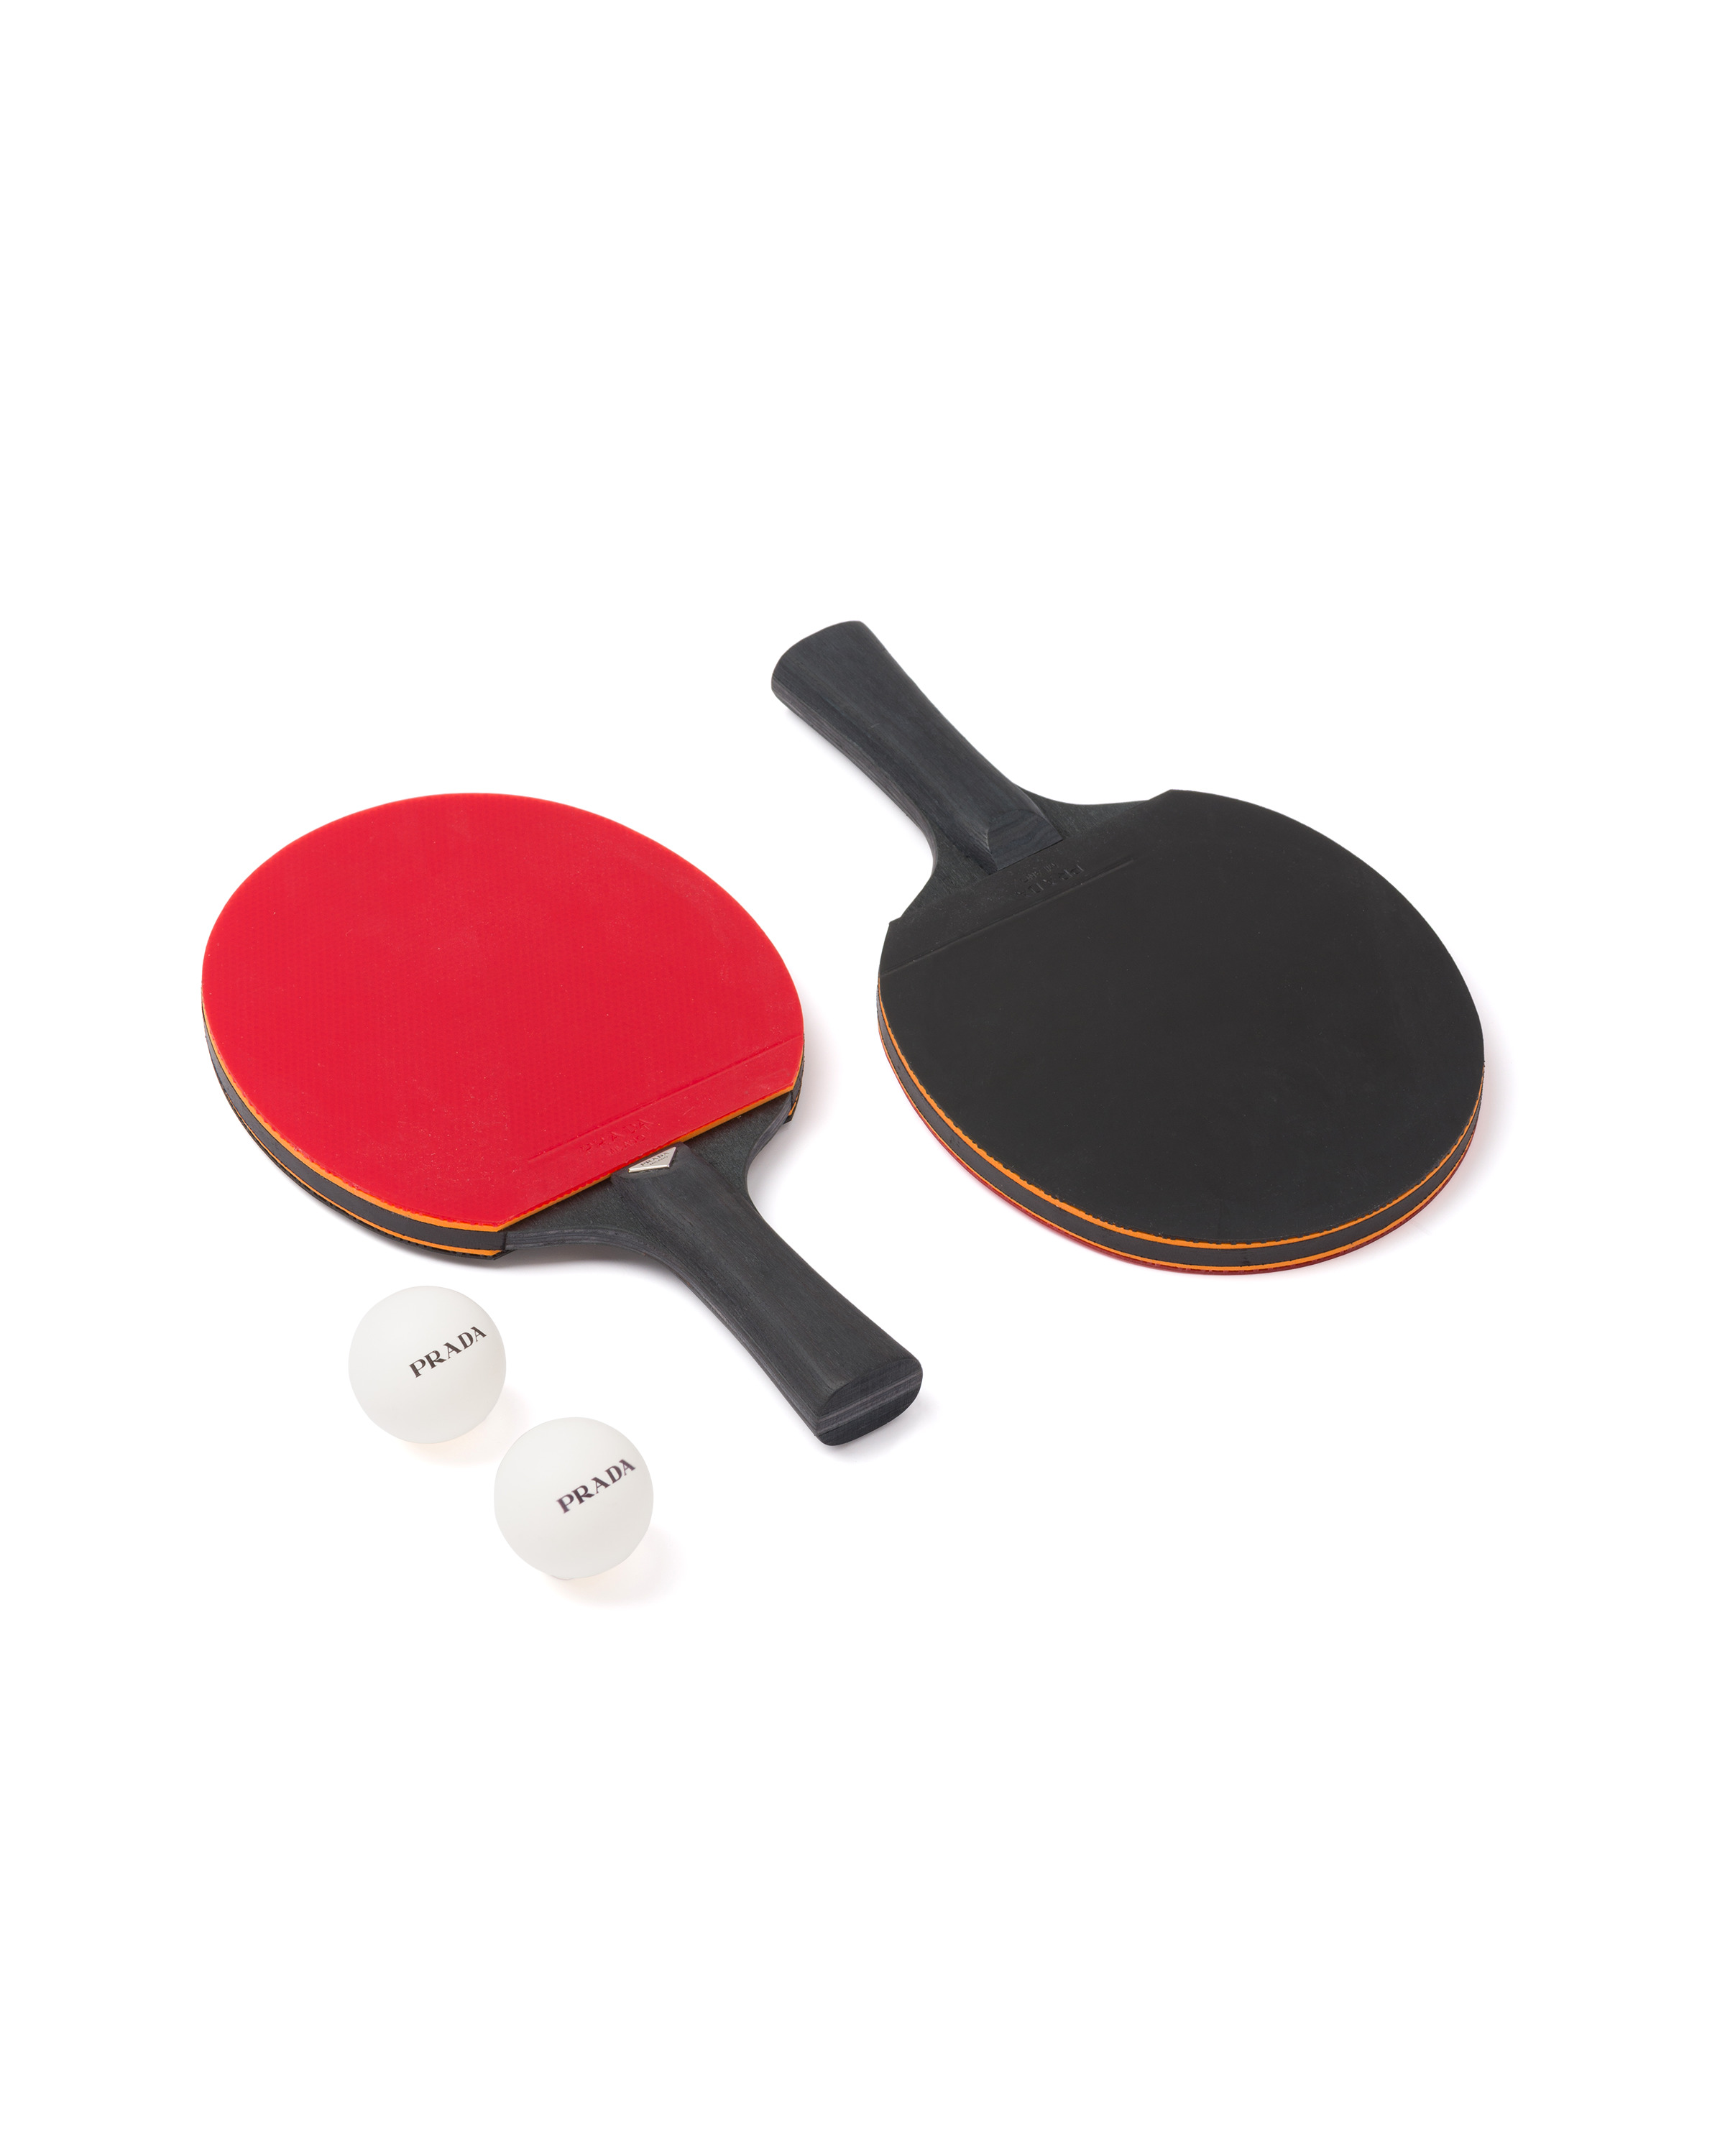 Ping-pong paddles - 2